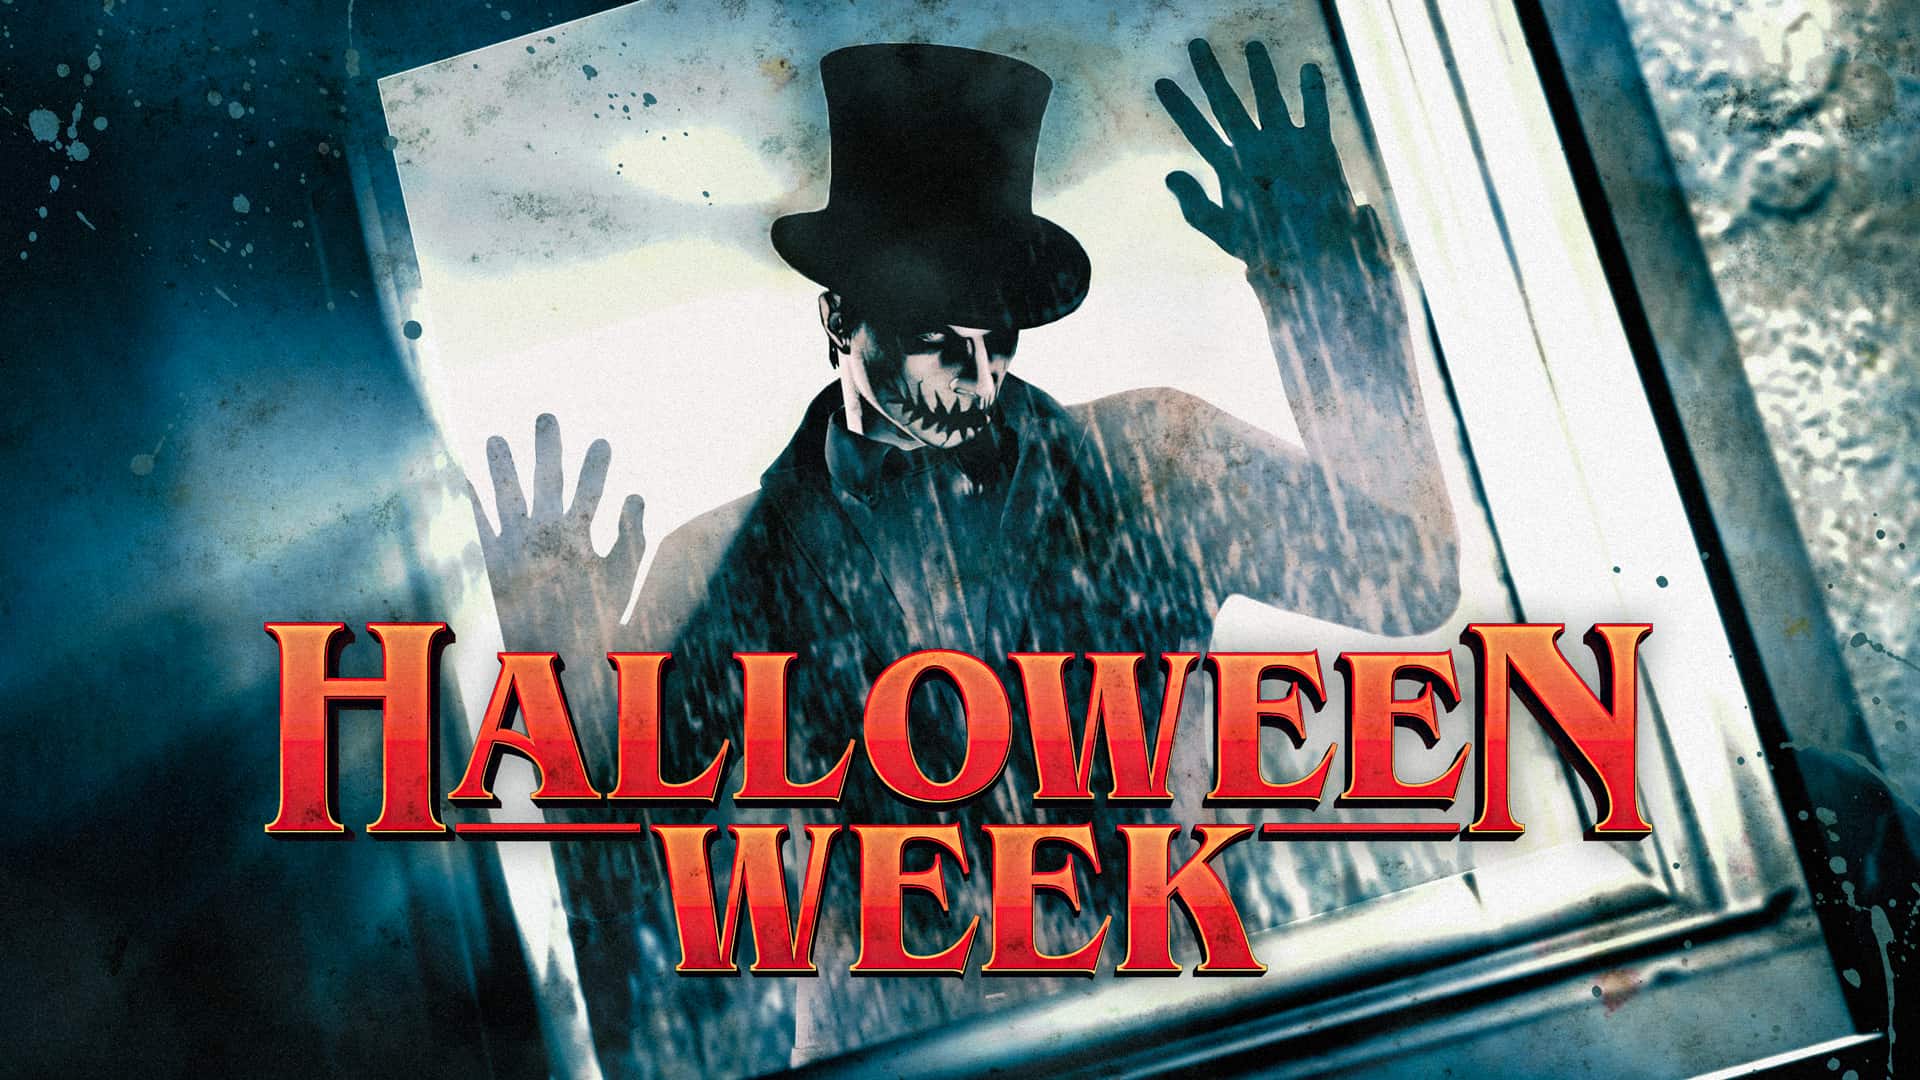 Halloweenowy tydzień już jest w GTA Online